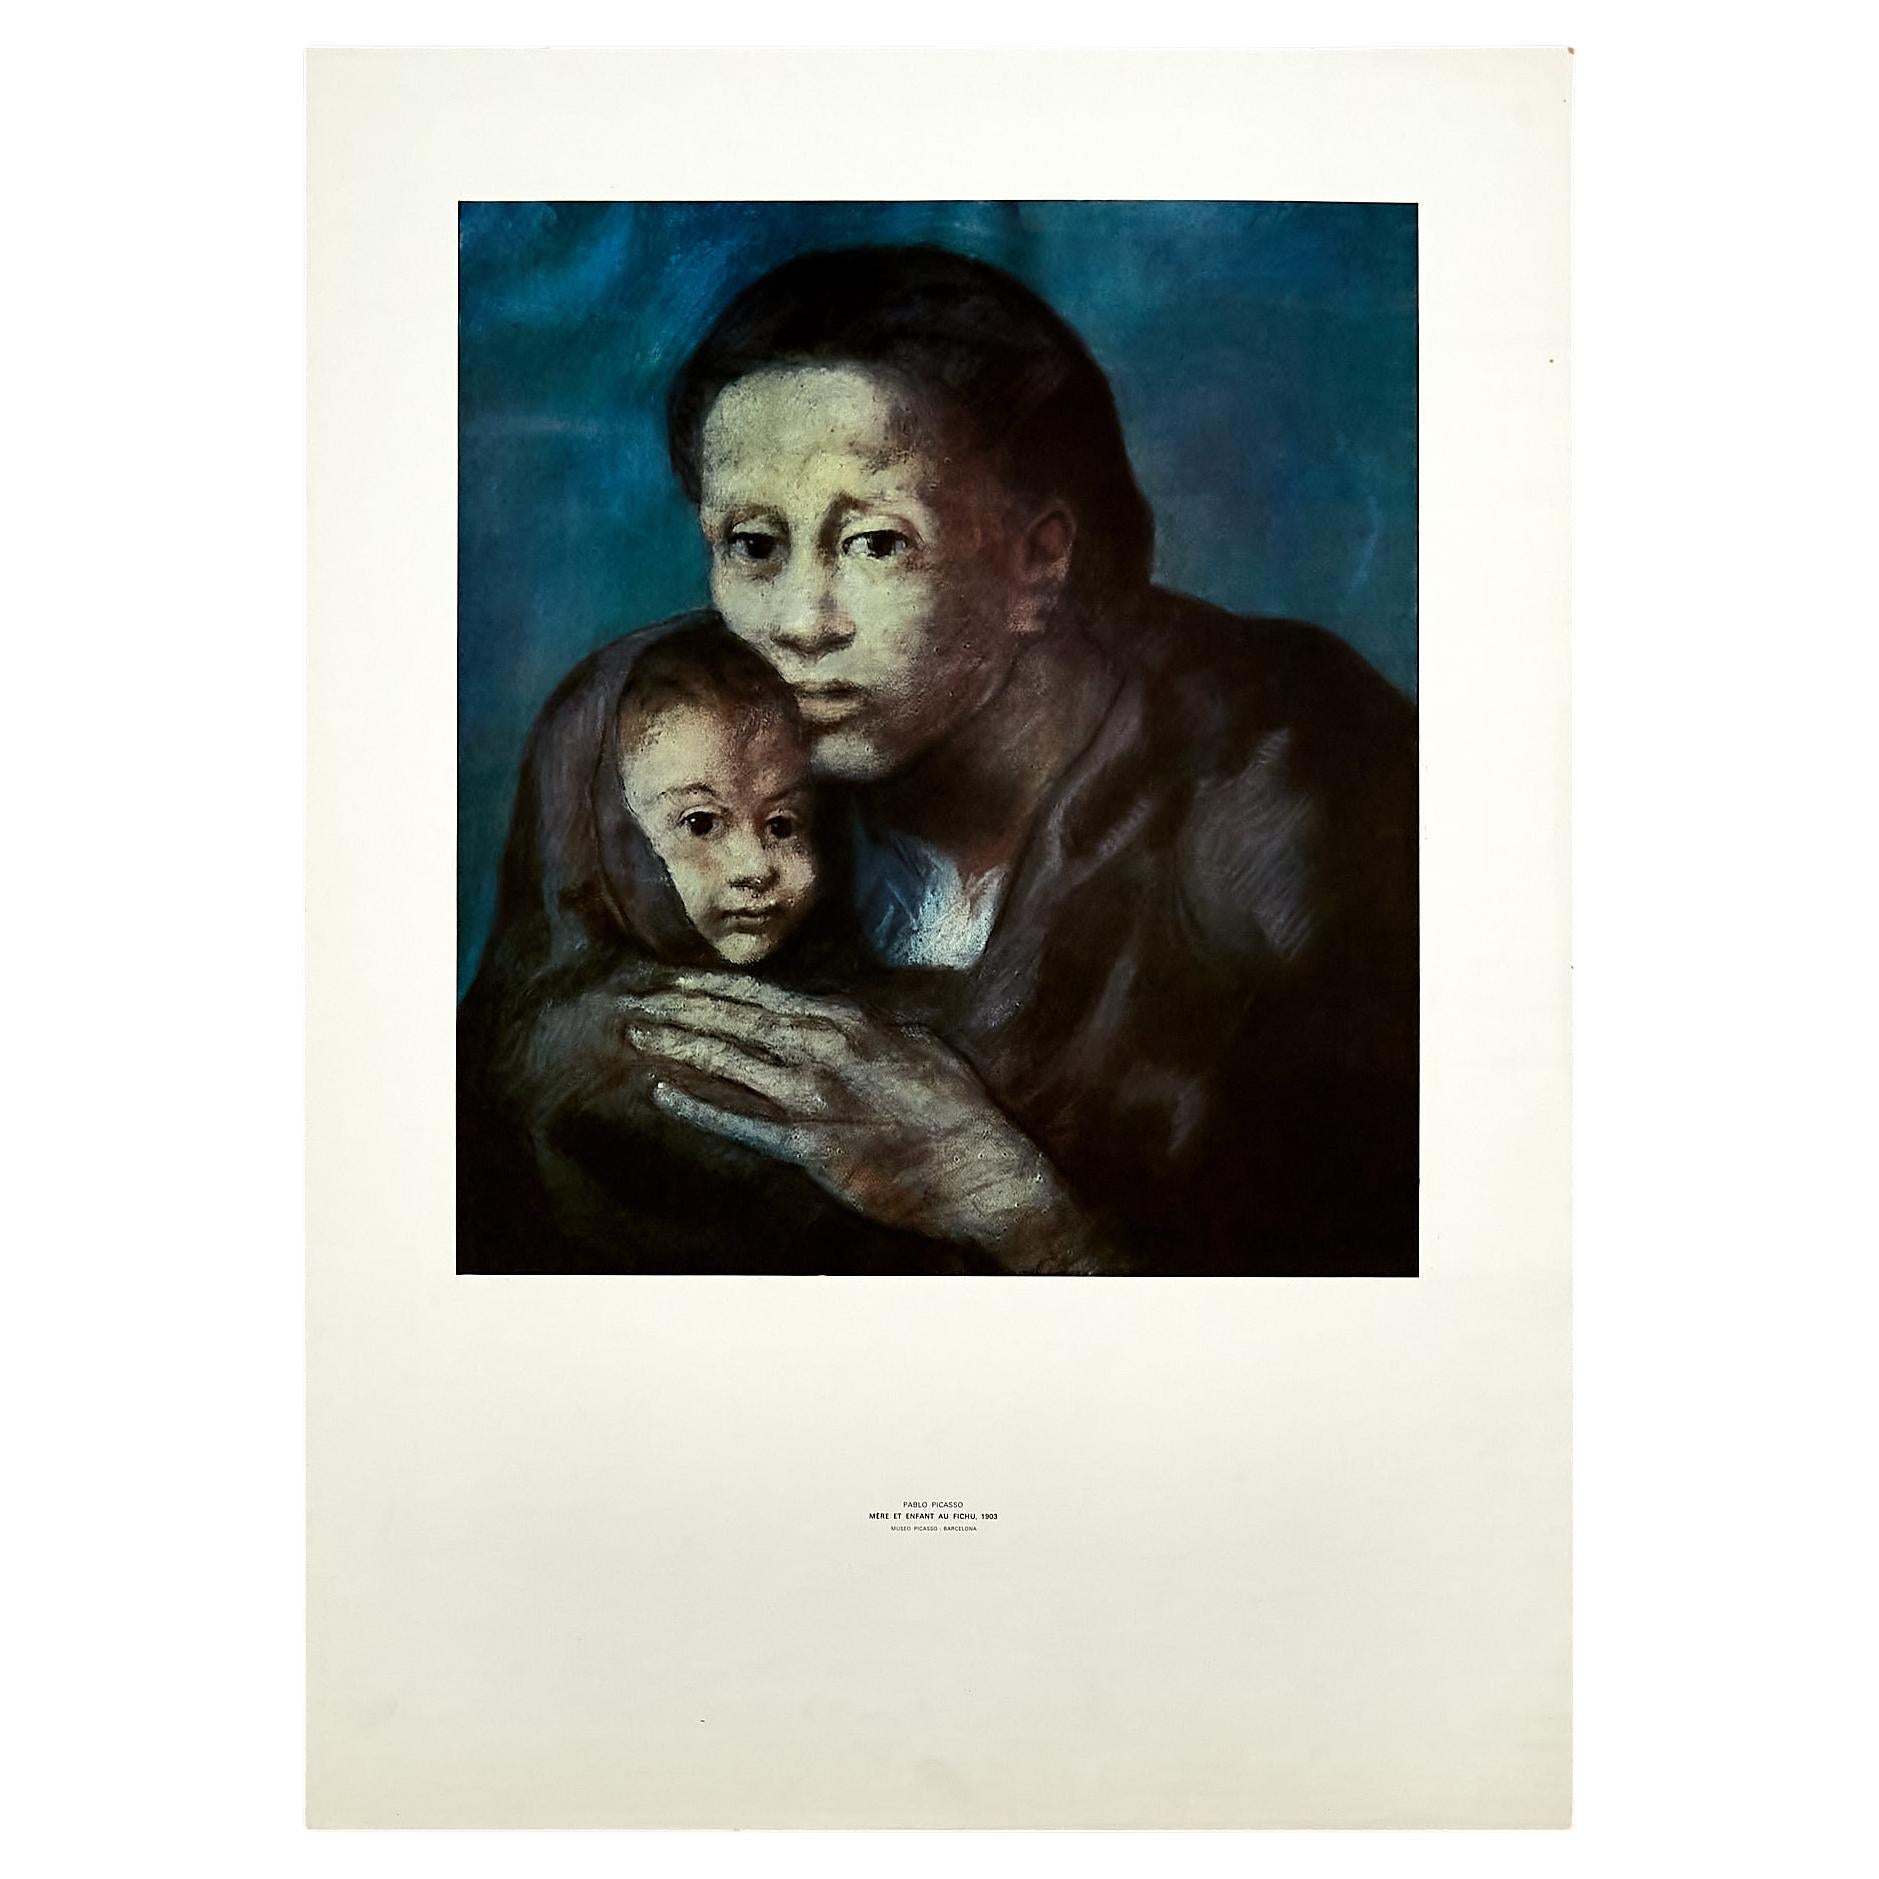 Hochwertiger Druck von Mère et Enfant au fichu 1903 von Pablo Picasso, um 1966.